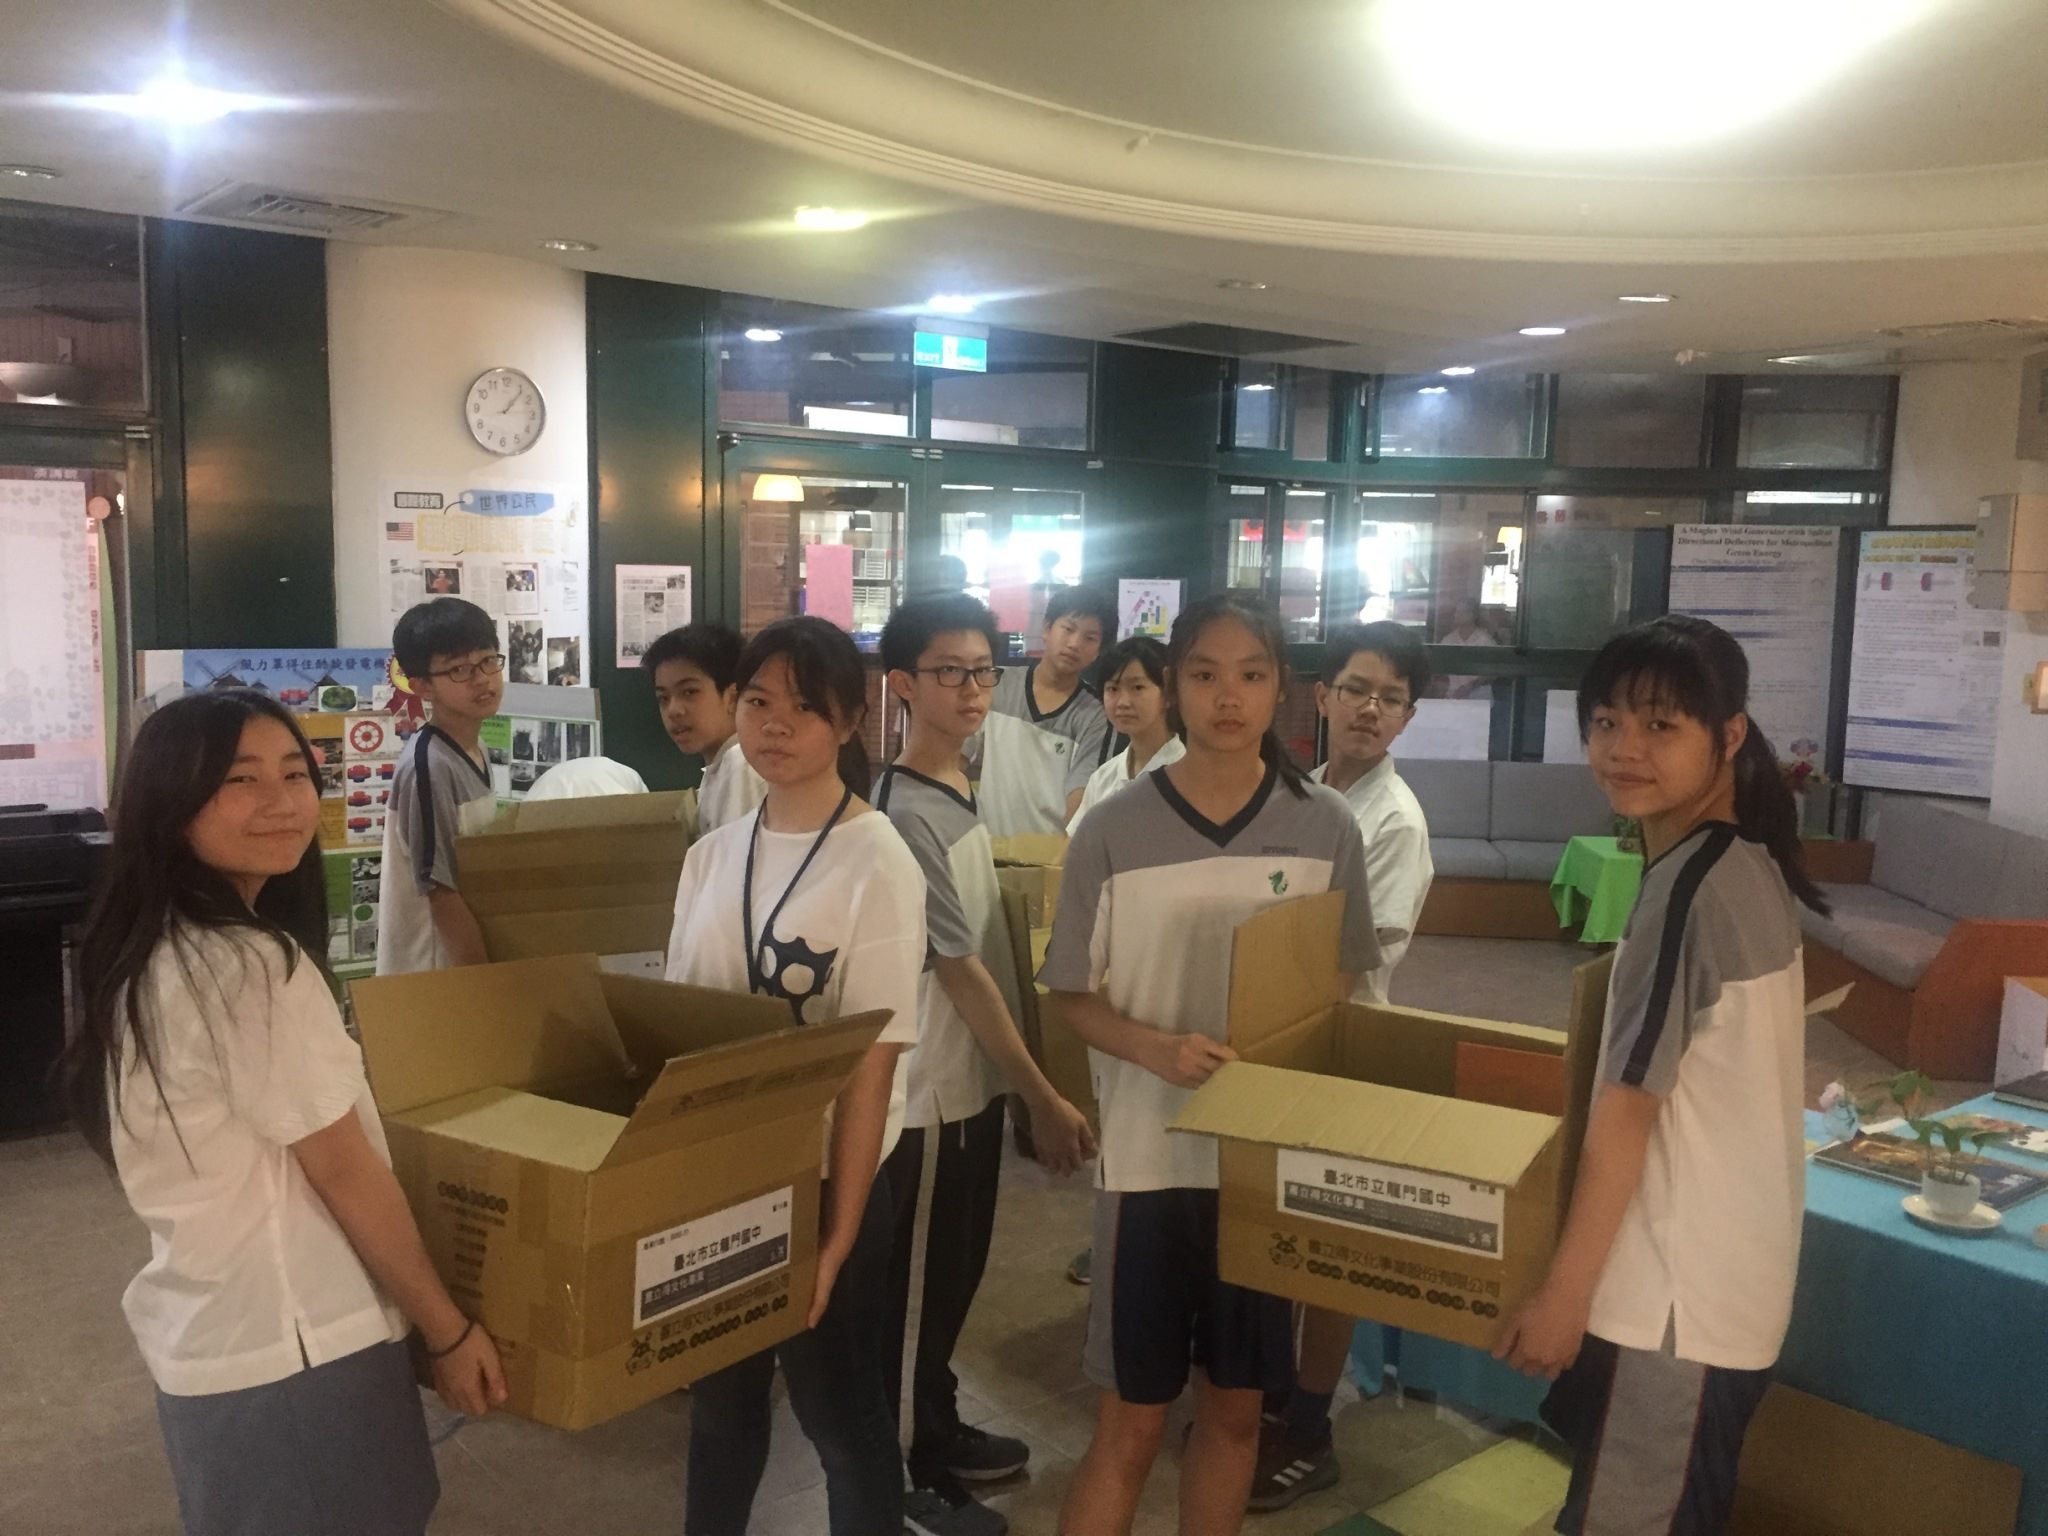 Foto kegiatan donasi buku untuk sekolah di Myanmar (sumber: Pemerintah Kota Taipei)